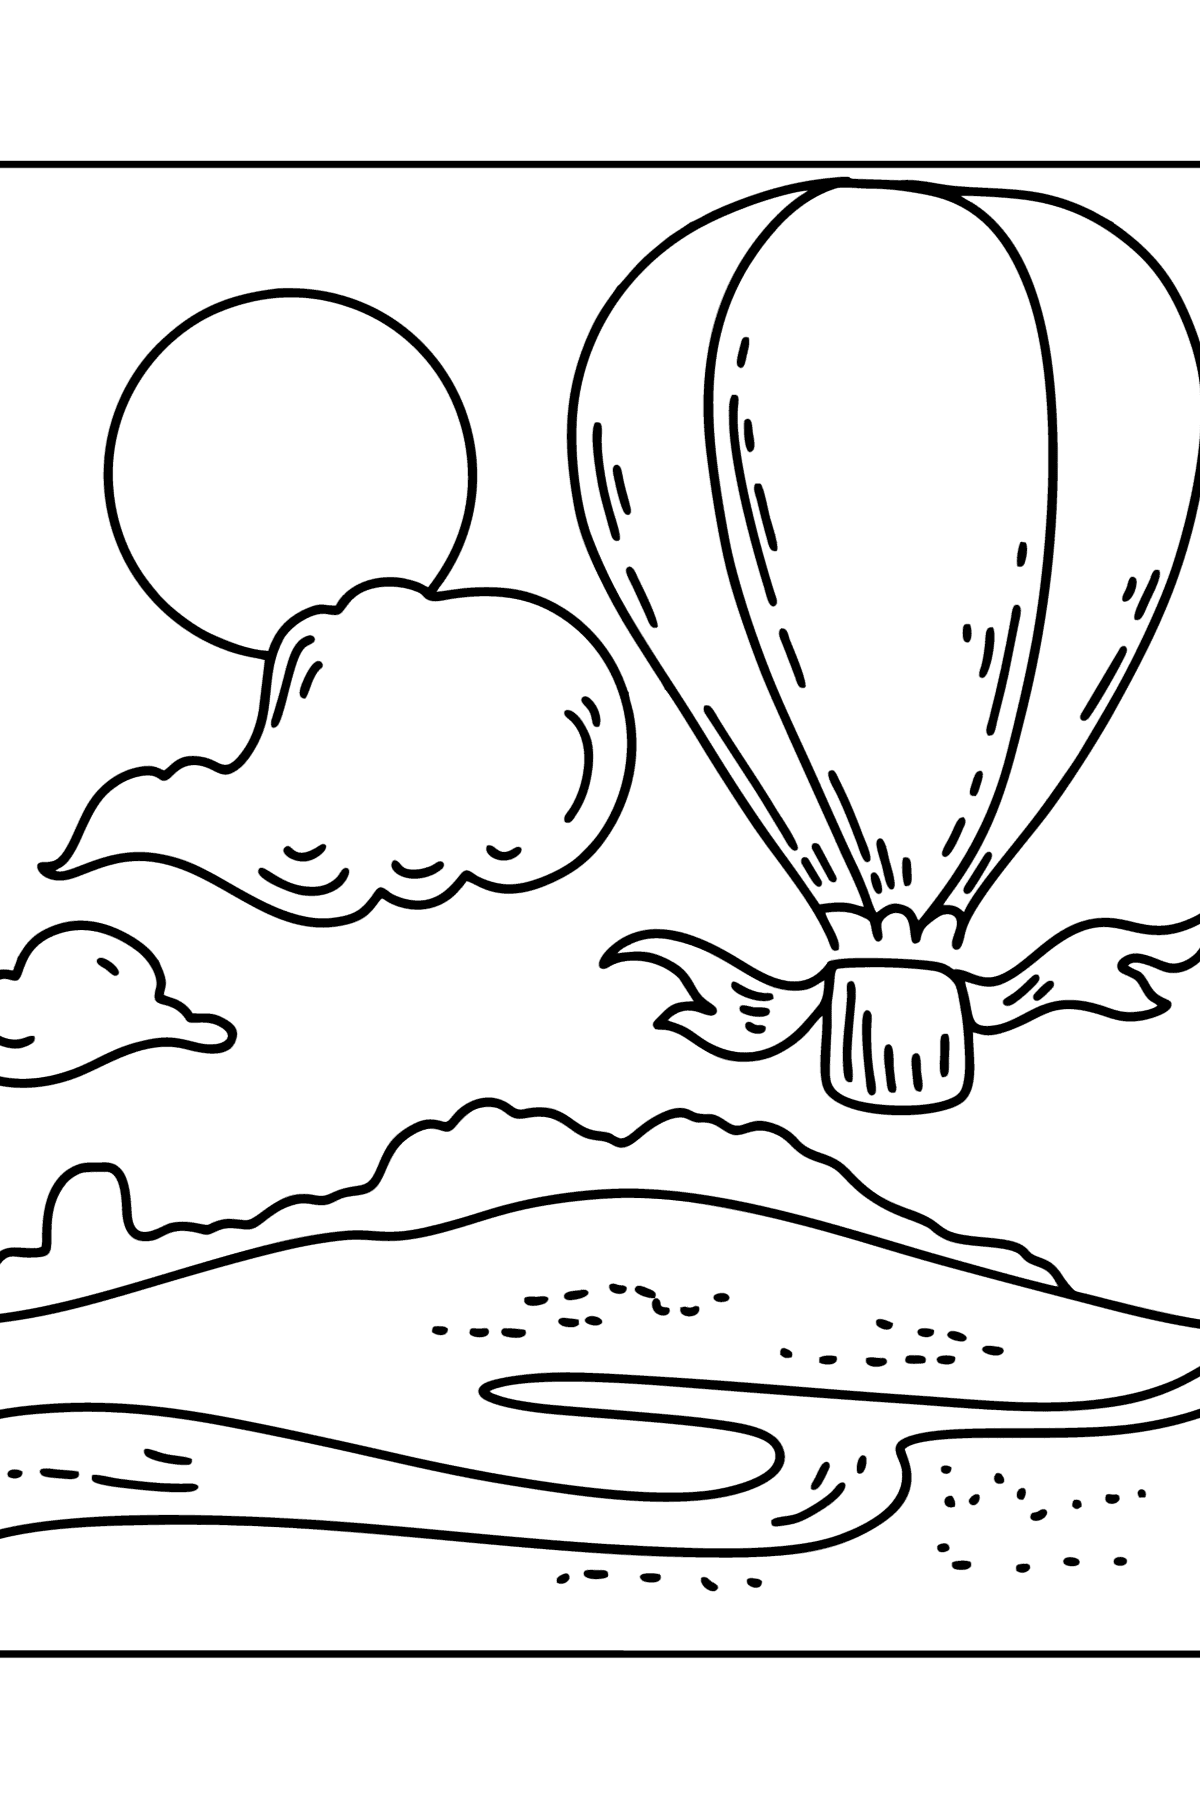 Ausmalbild - Heißluftballon - Malvorlagen für Kinder